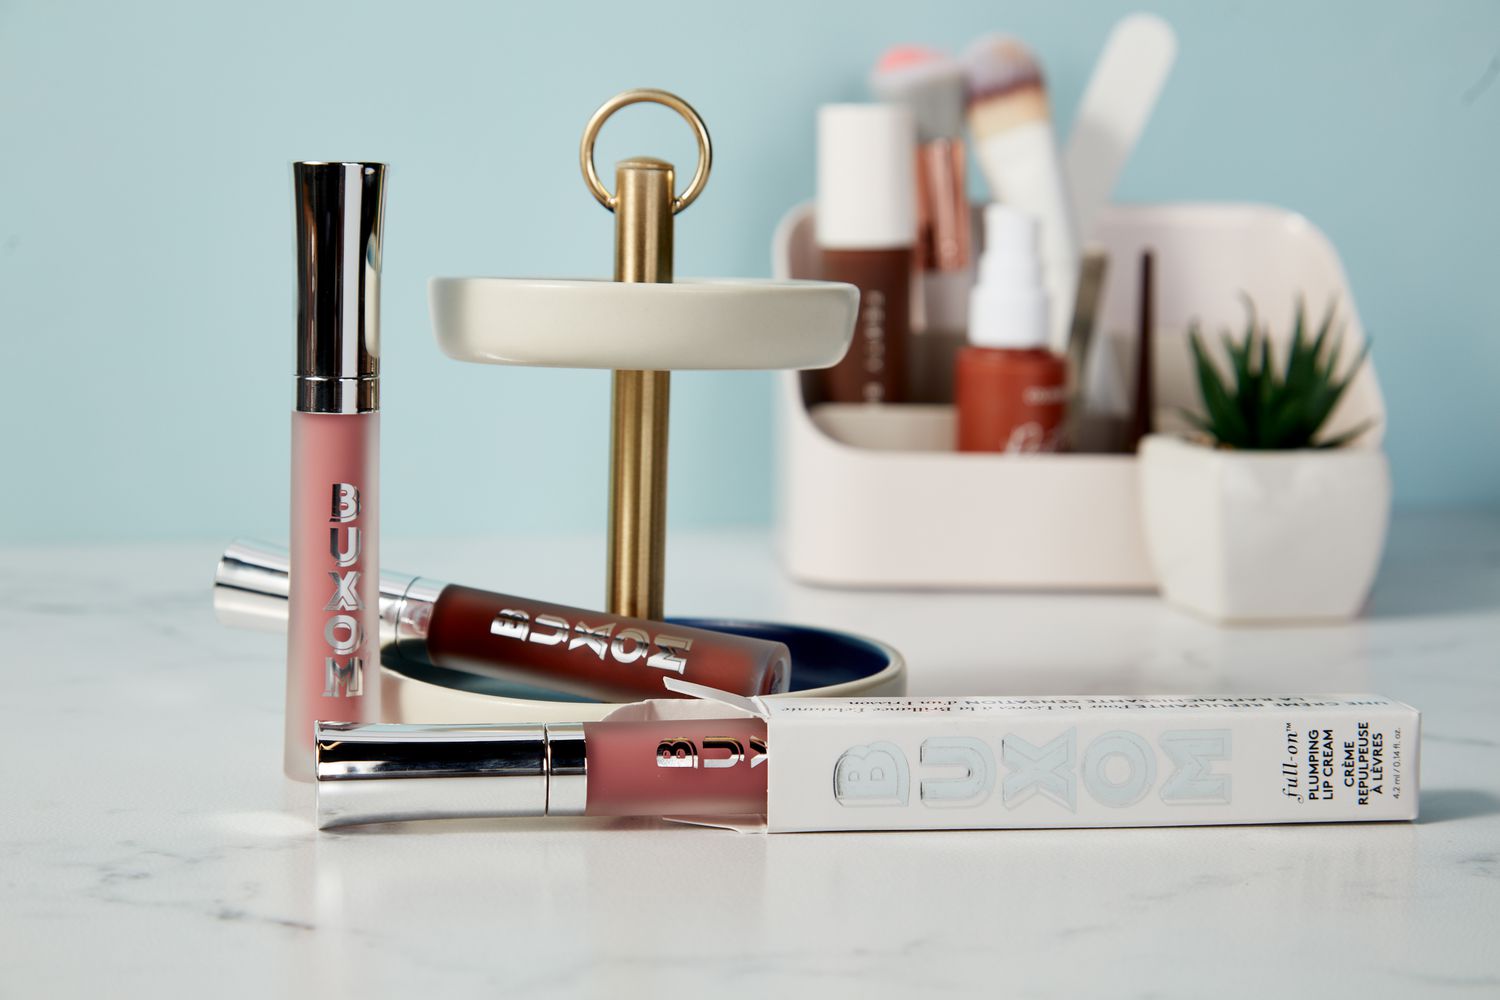 Buxom Full-On Plumping Lip Cream Gloss em exposição no chão